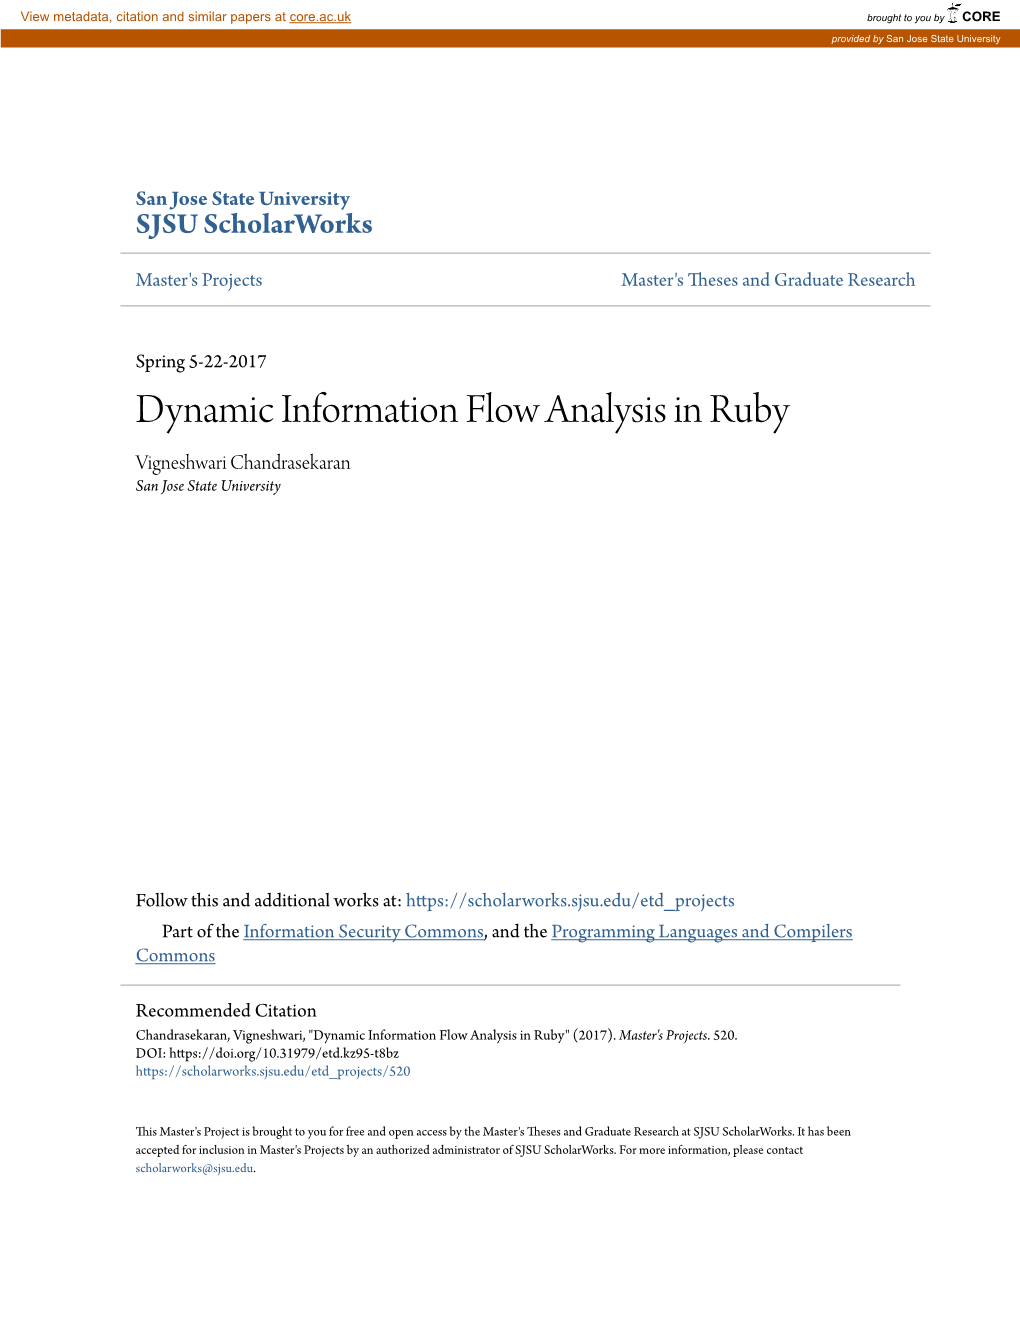 Dynamic Information Flow Analysis in Ruby Vigneshwari Chandrasekaran San Jose State University